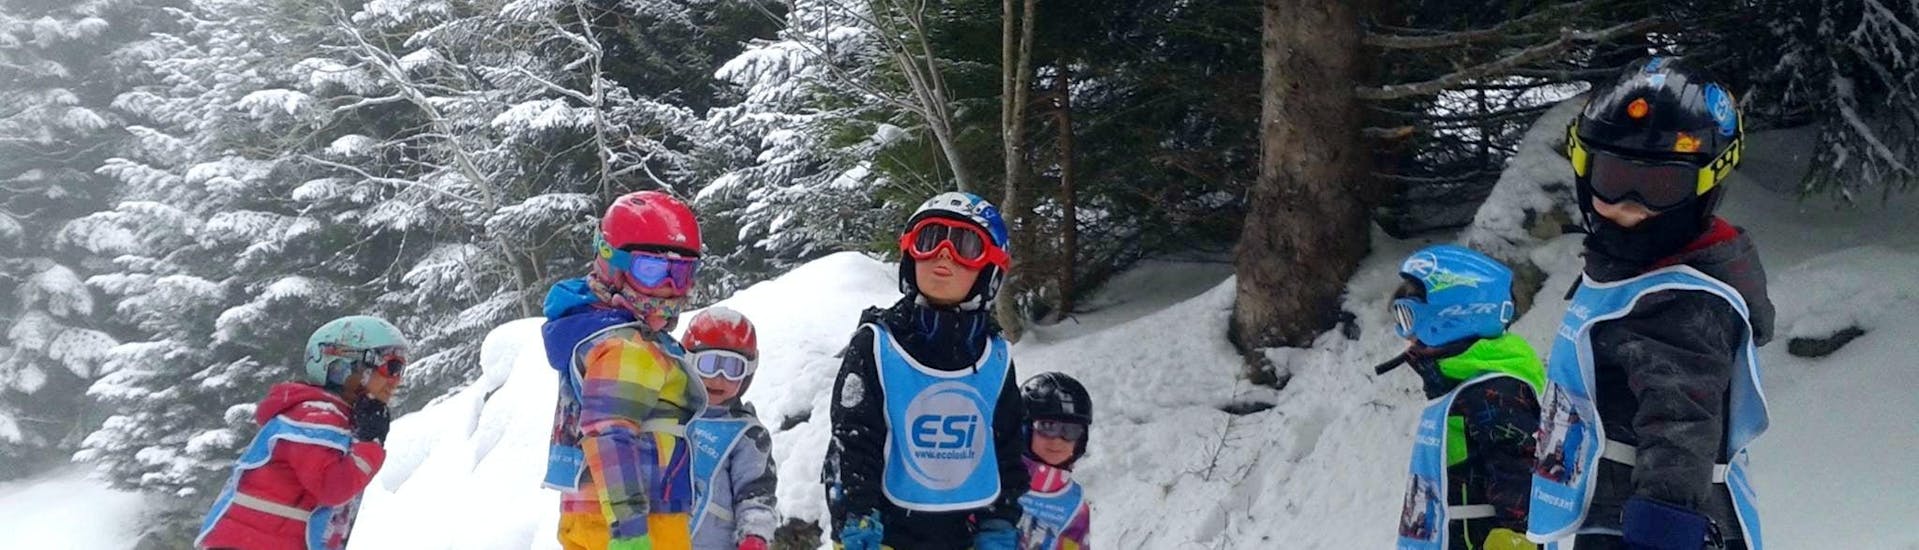 Skilessen voor kinderen vanaf 3 jaar - beginners.